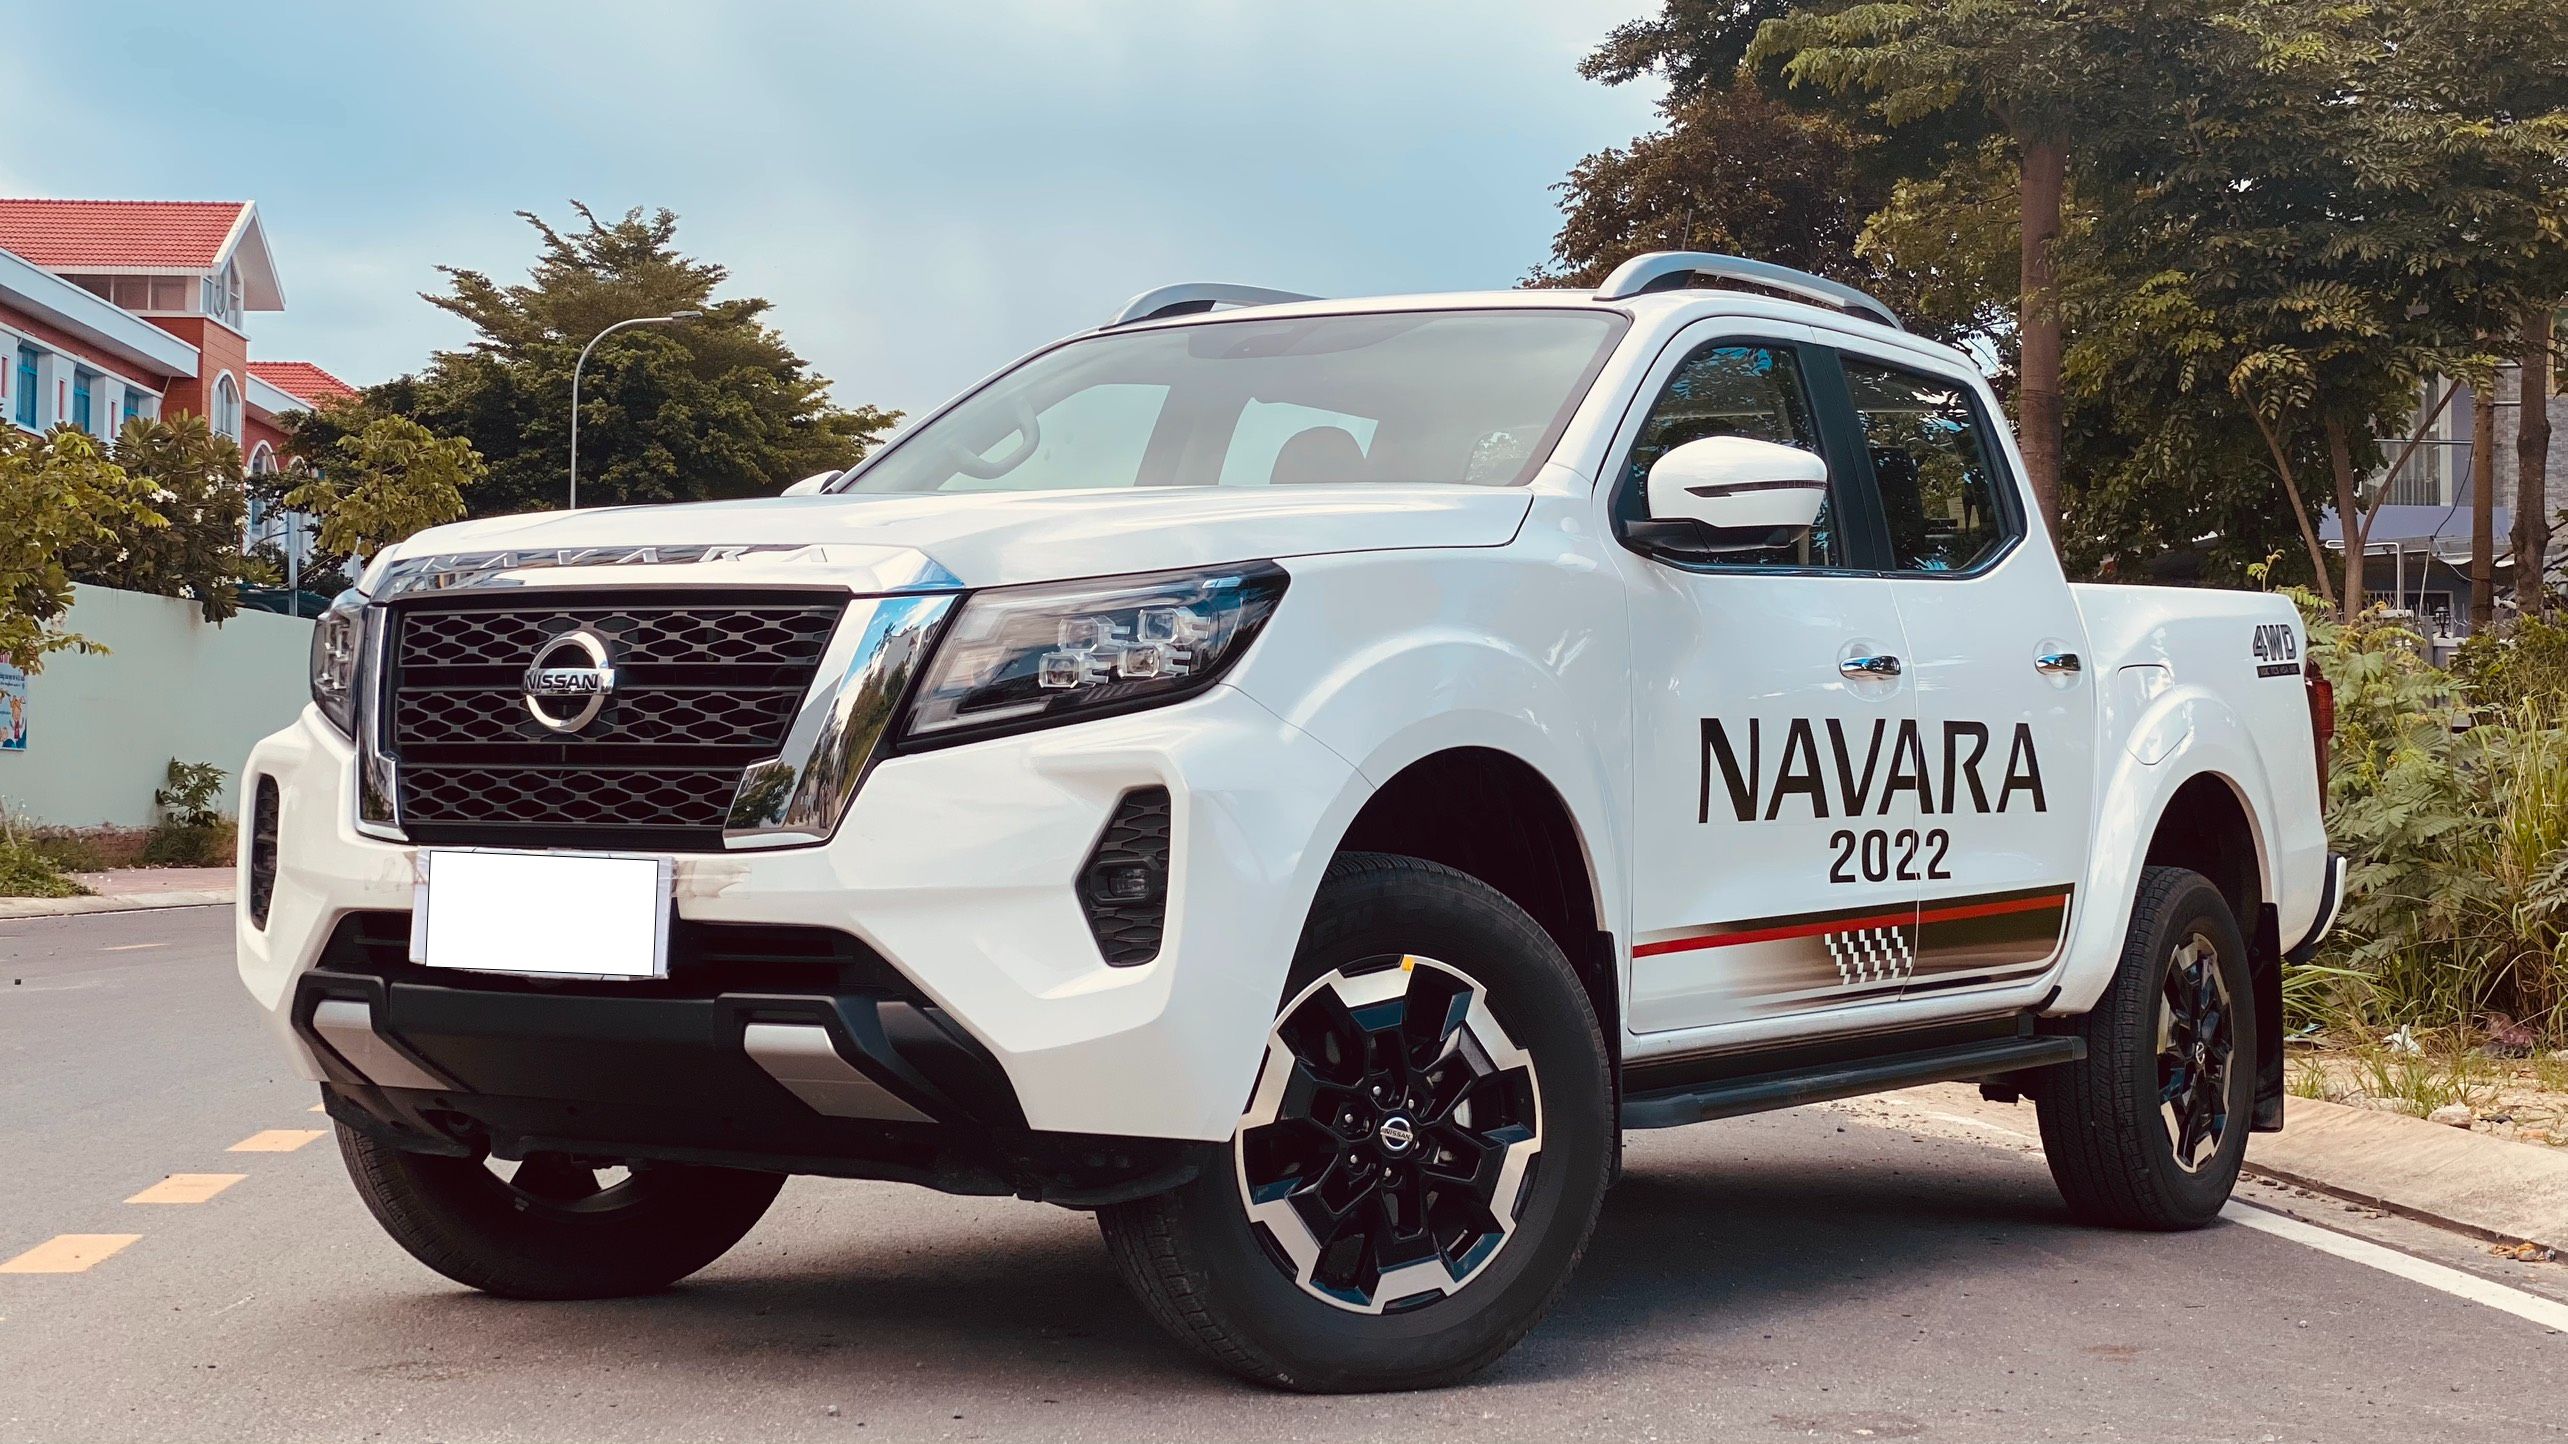 Nissan Navara 2022 với thiết kế hiện đại và tính năng tối ưu sẽ là lựa chọn lí tưởng cho những ai đang tìm kiếm một chiếc xe bền bỉ và đầy phong cách. Hãy xem hình ảnh để trải nghiệm trước vẻ đẹp của chiếc xe này.